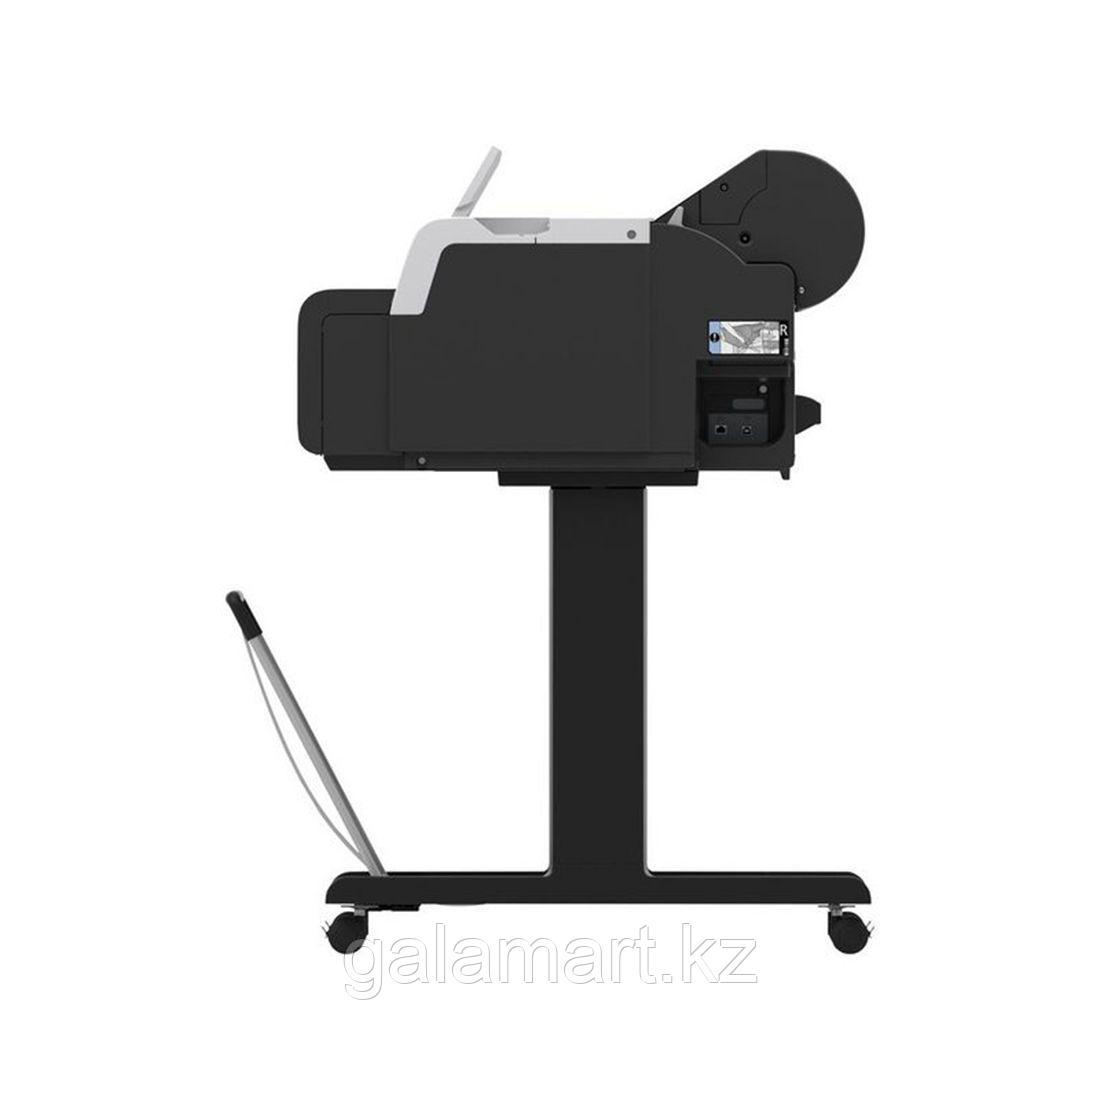 Широкоформатный принтер Canon imagePROGRAF TM-240